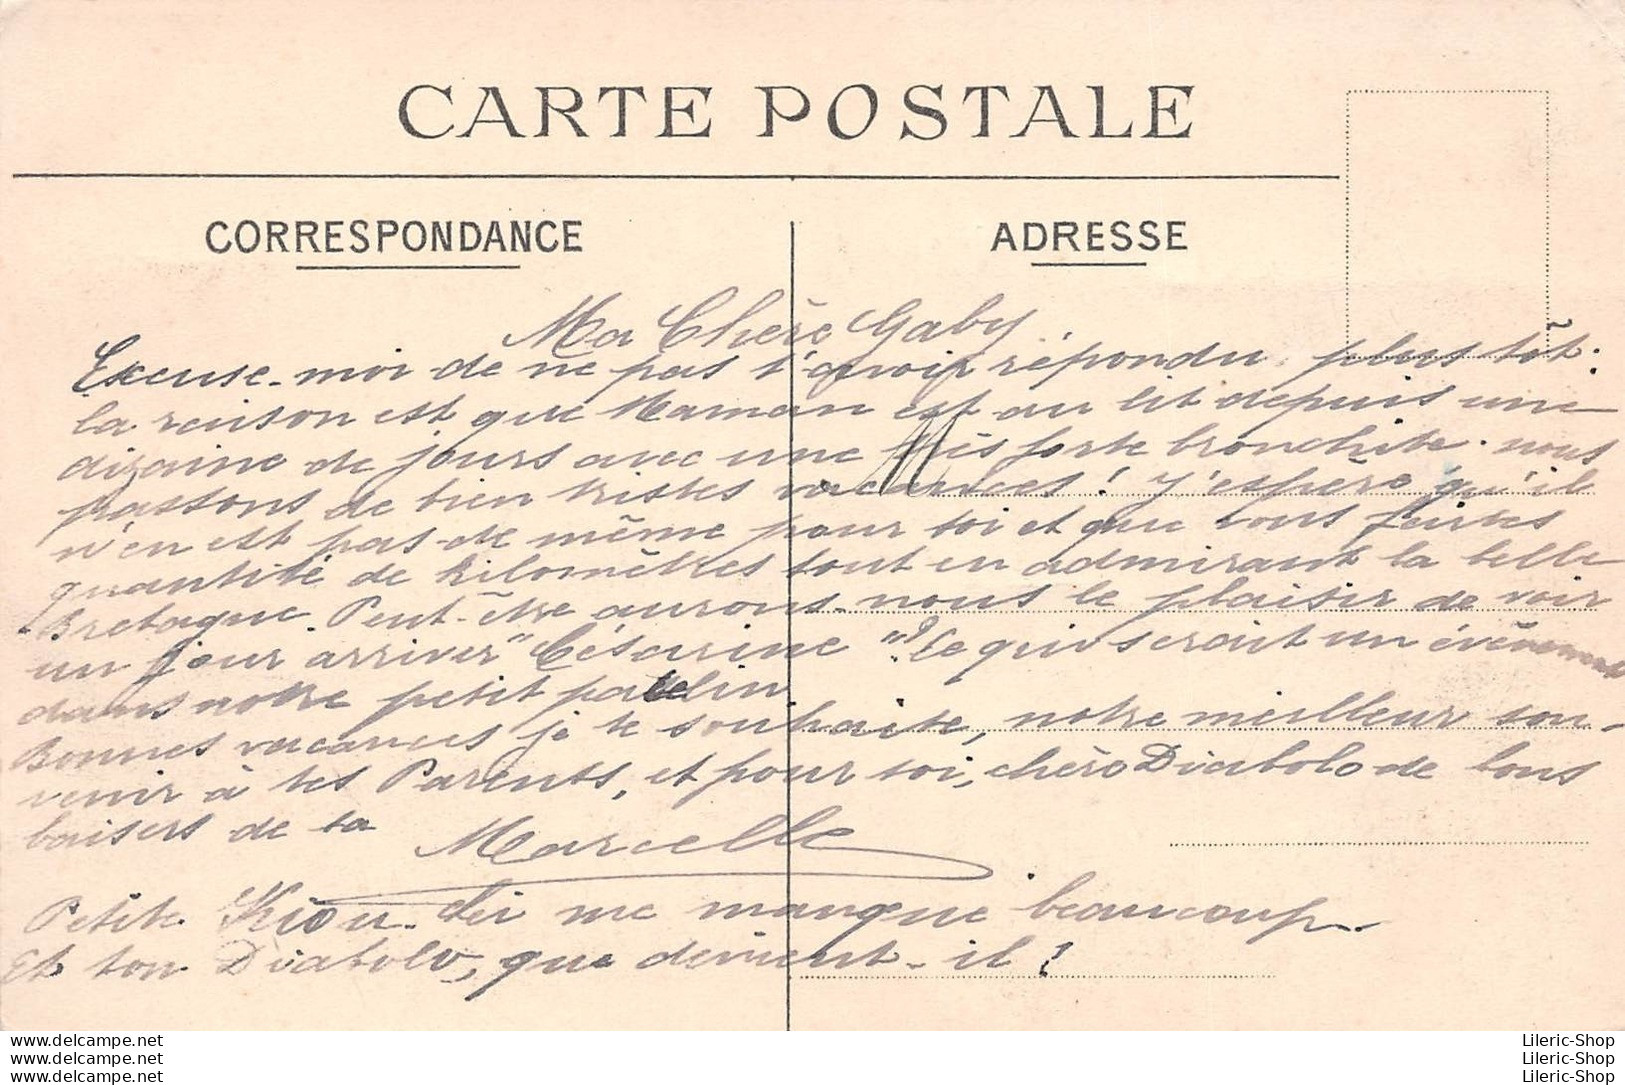 COUTAINVILLE (50) - La Pêche Au Lançon - Éditions A. Jolivet - 1909 - Cpa - Autres & Non Classés